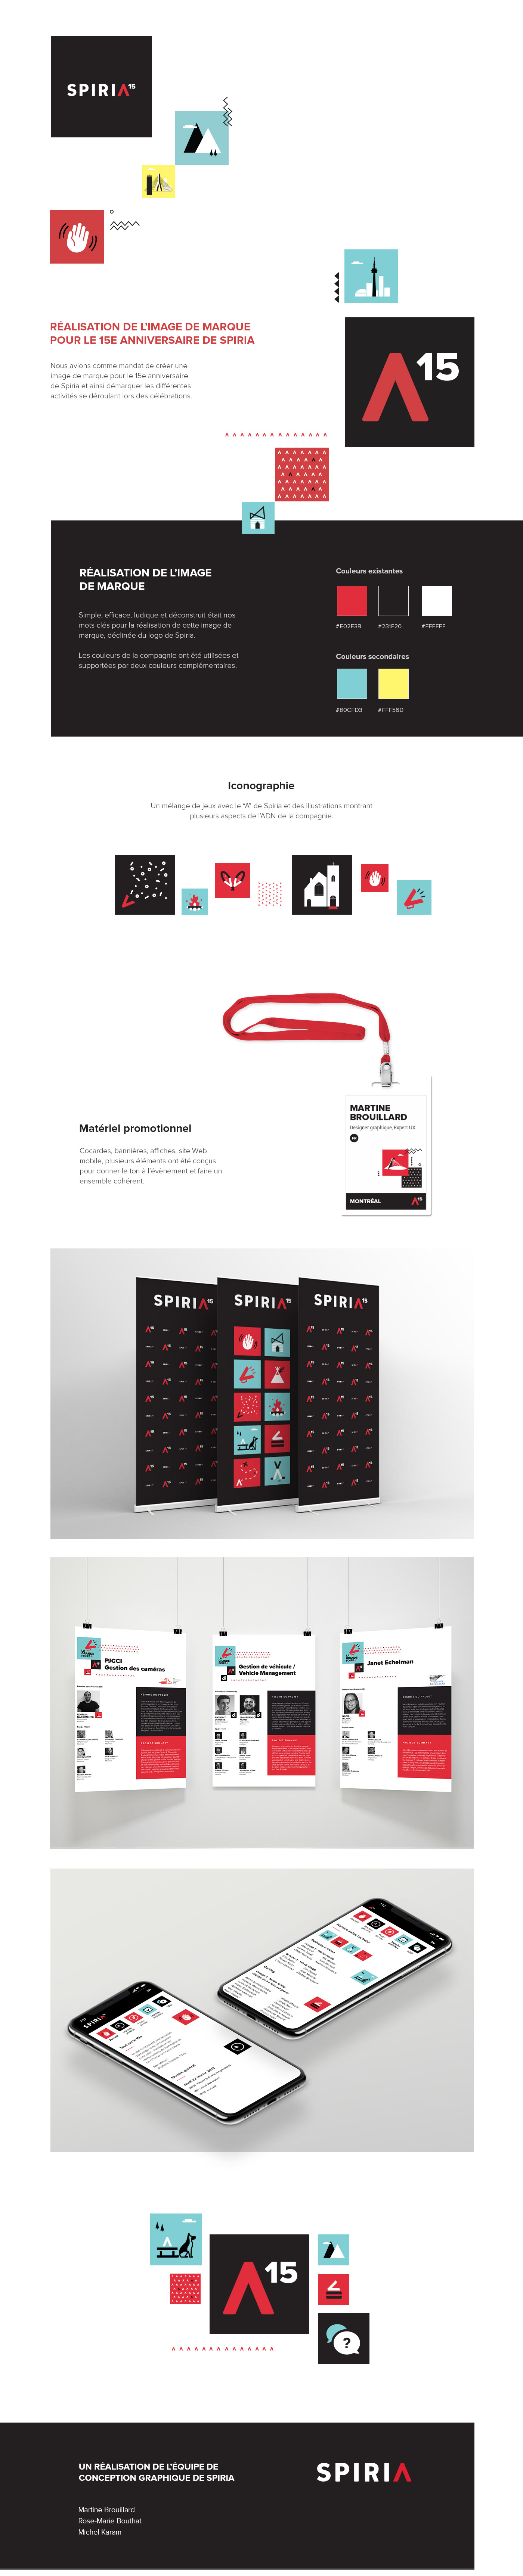 Adobe XD Illustrator branding  colorfull mobile website icons